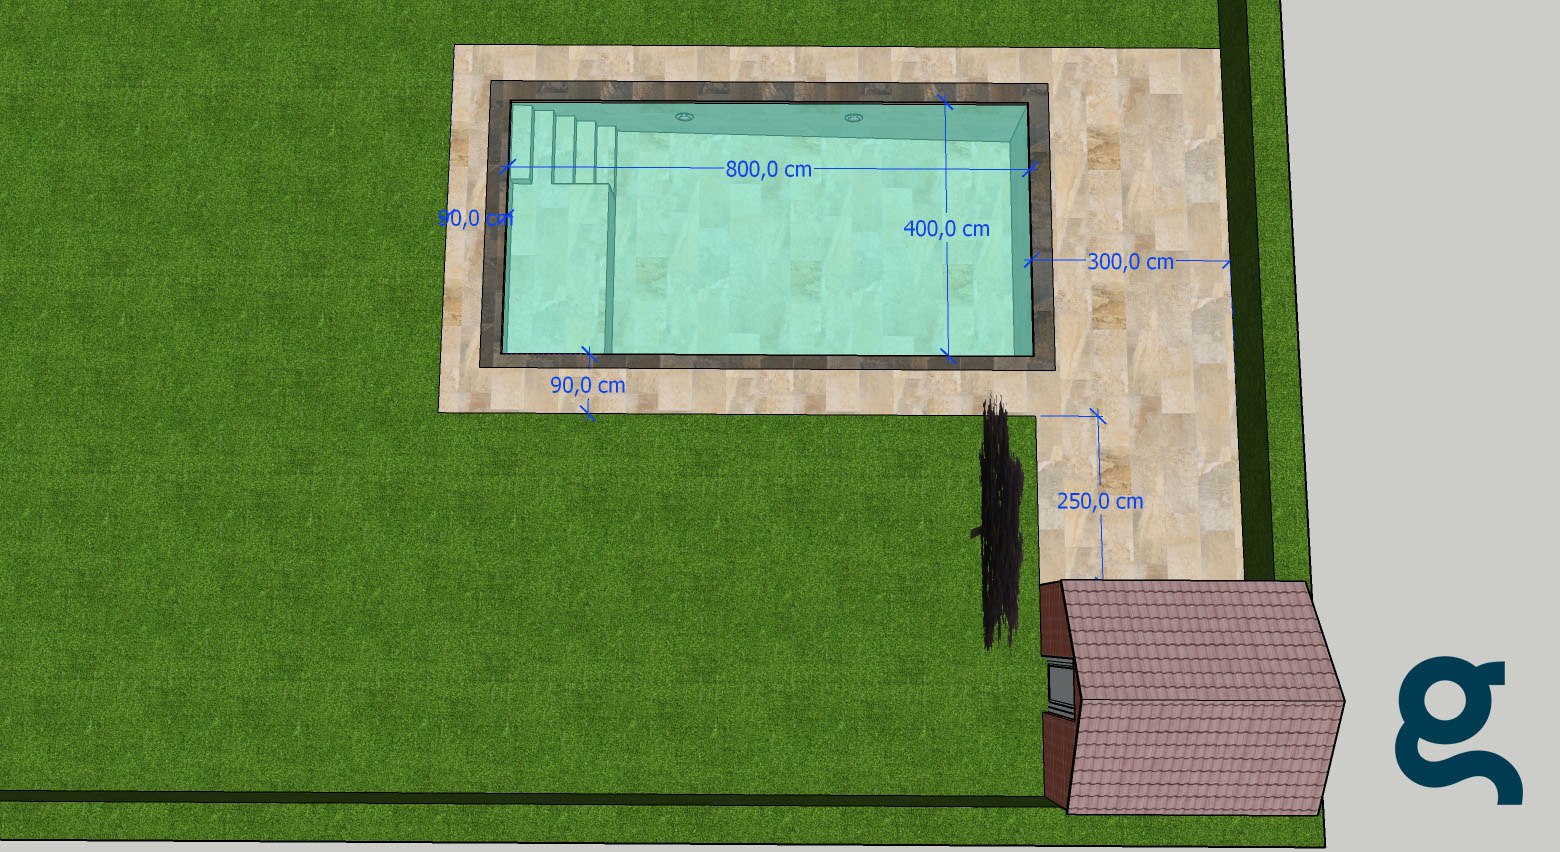 Dimensiones piscina desde alzado